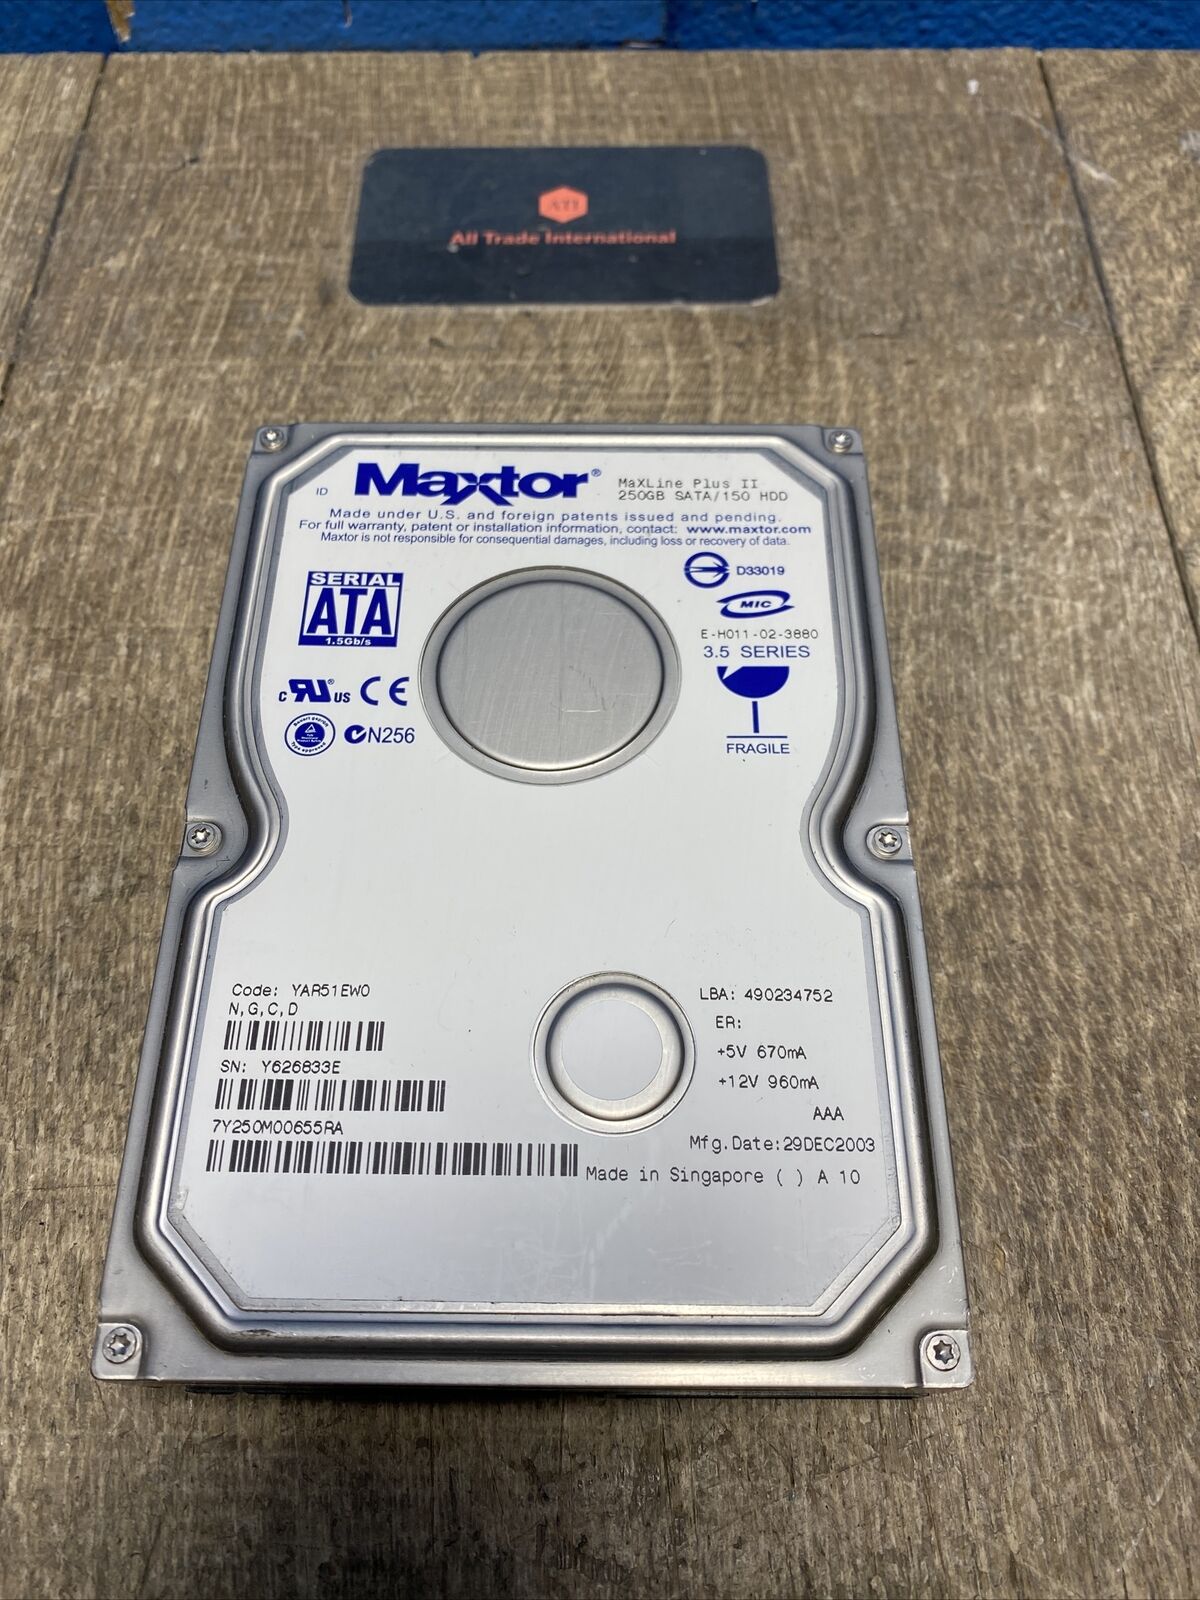 Maxtor 7Y250M00655RA MaXLine Plus II 250GB 7.2K SATA 150 HDD Hard Drive 